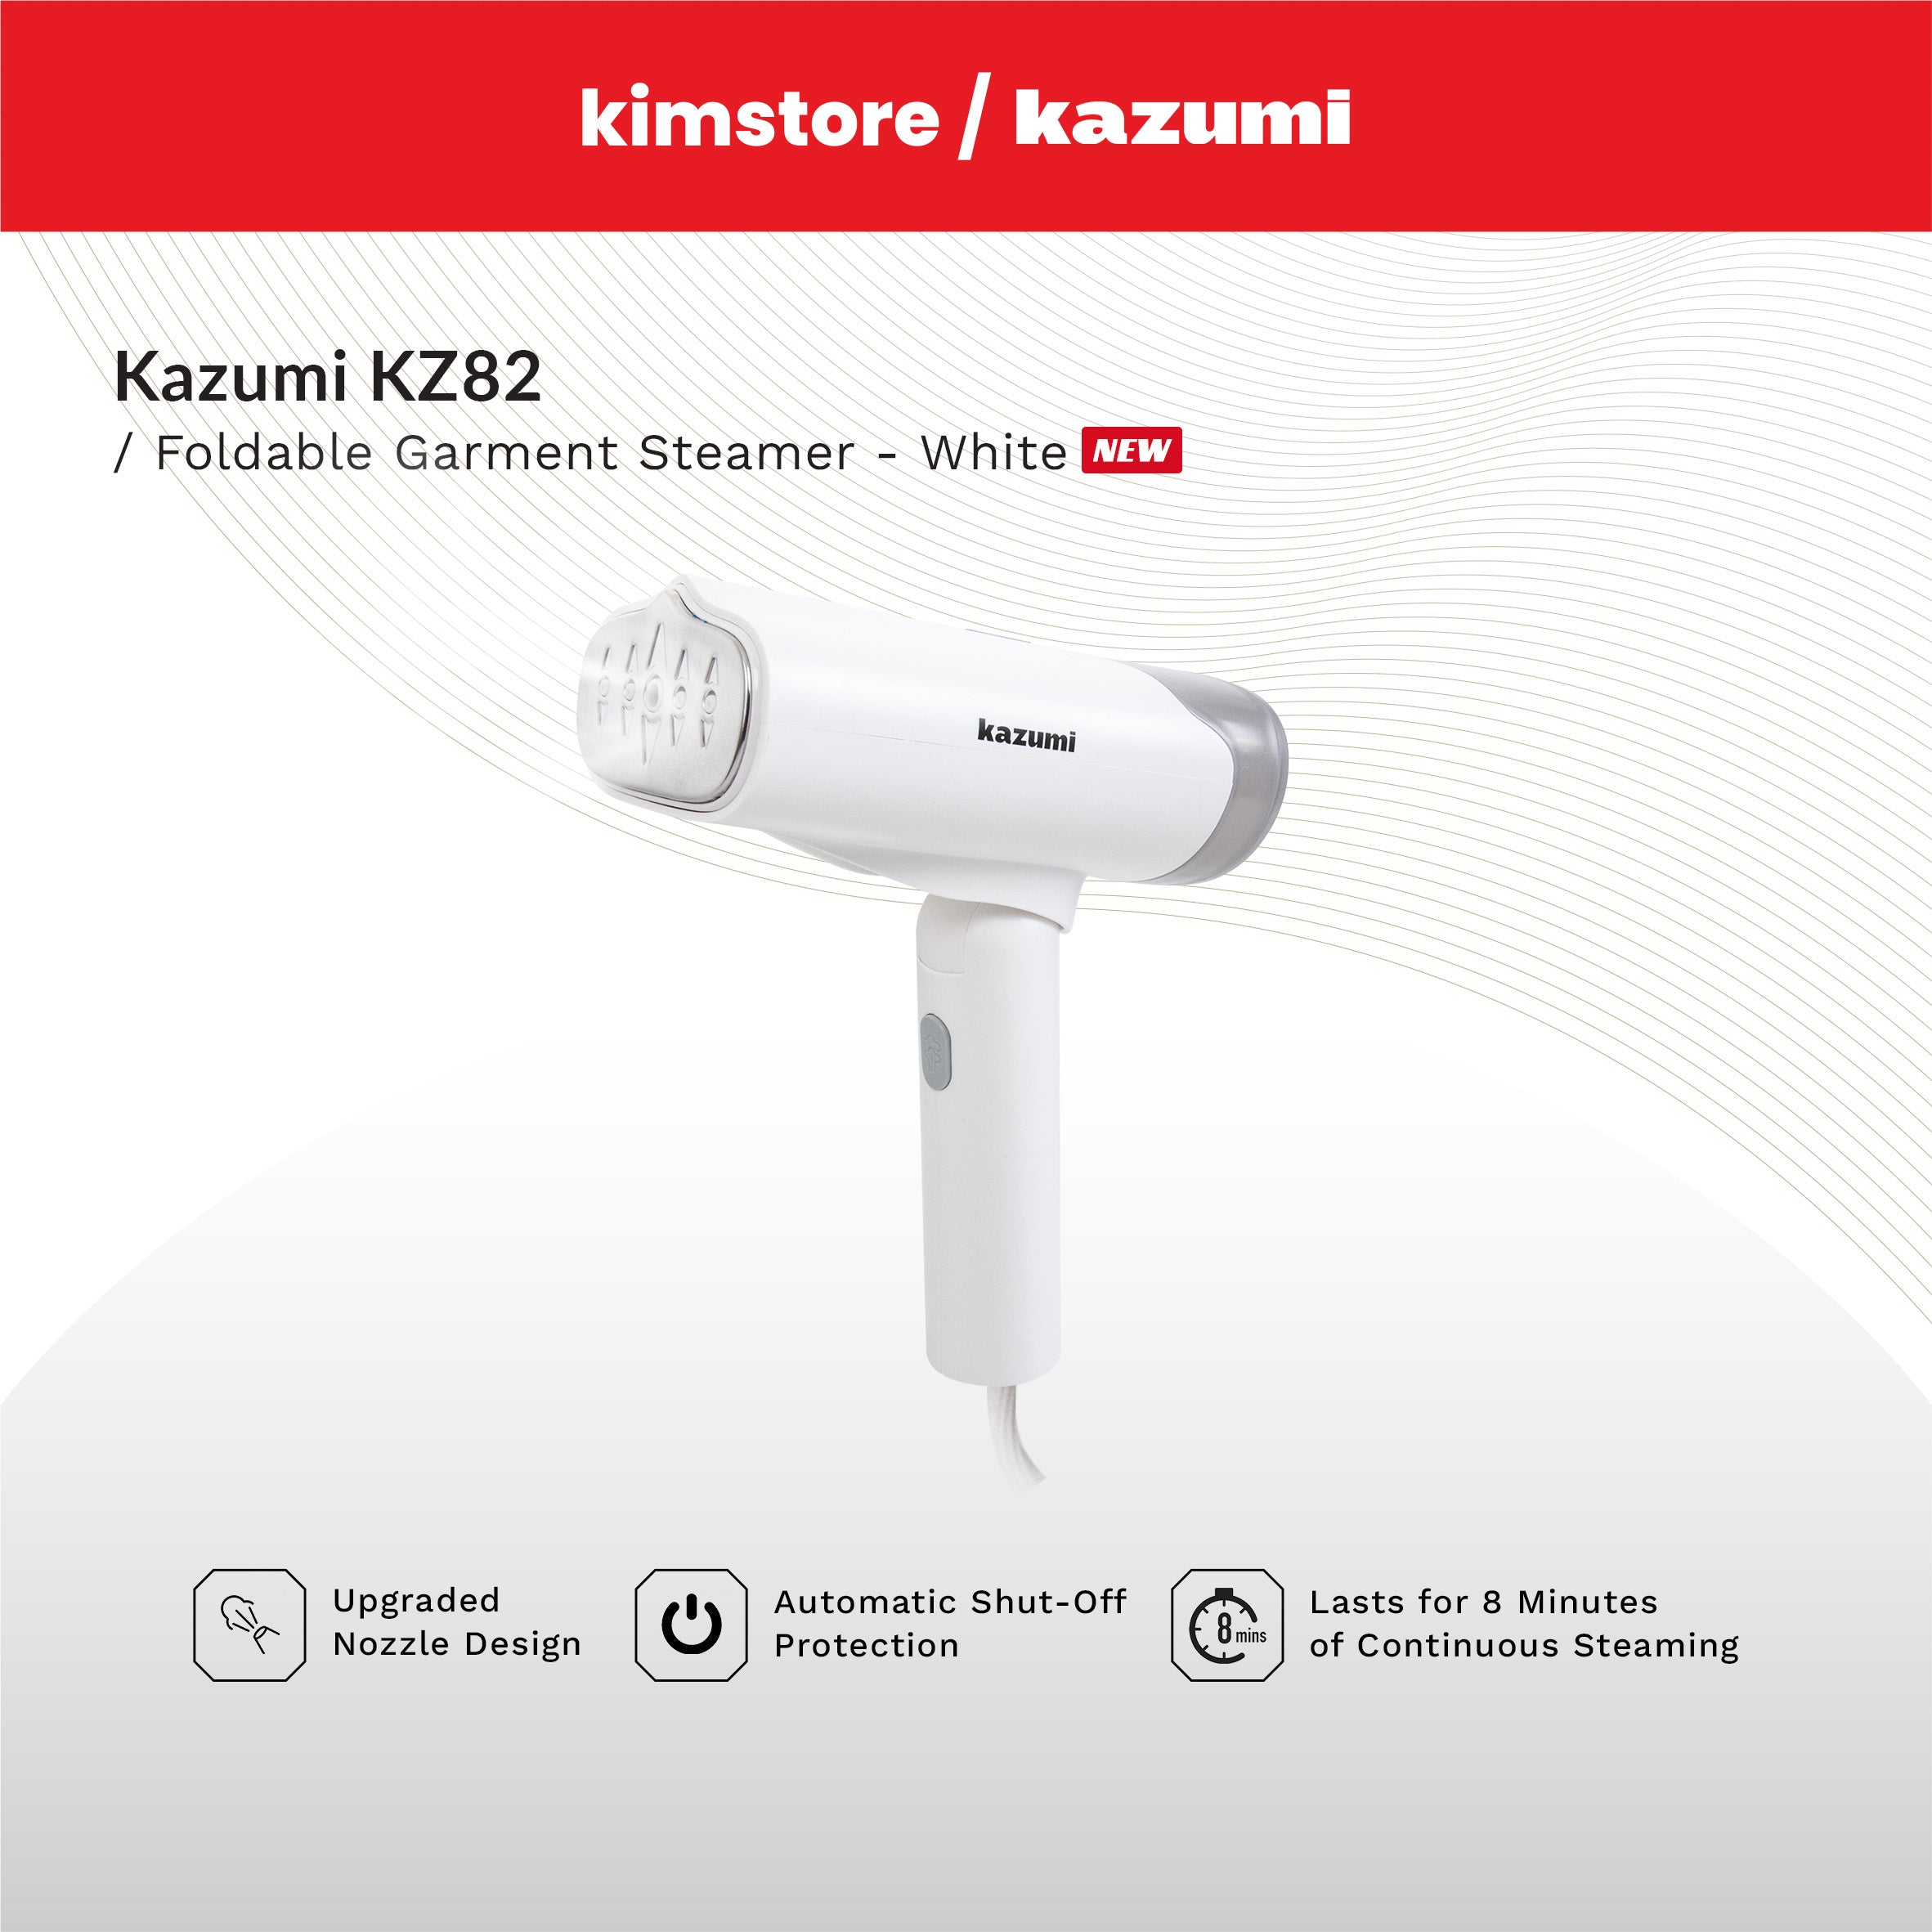 Kazumi KZ82 Foldable Garment Steamer